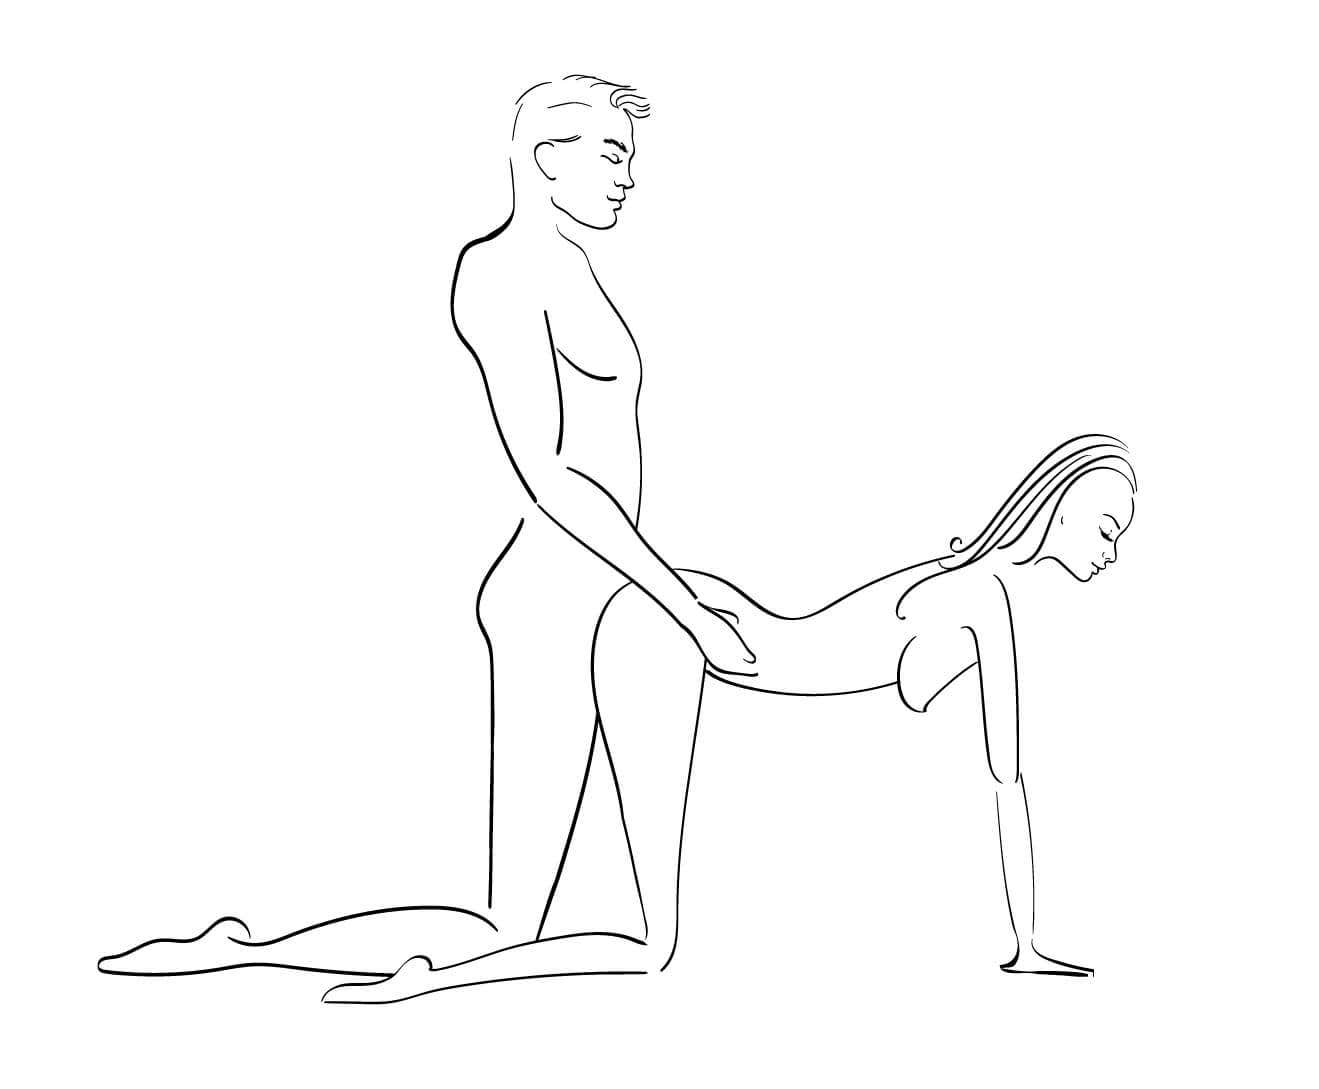 Mężczyzna i kobieta uprawiający seks w pozycji na pieska.